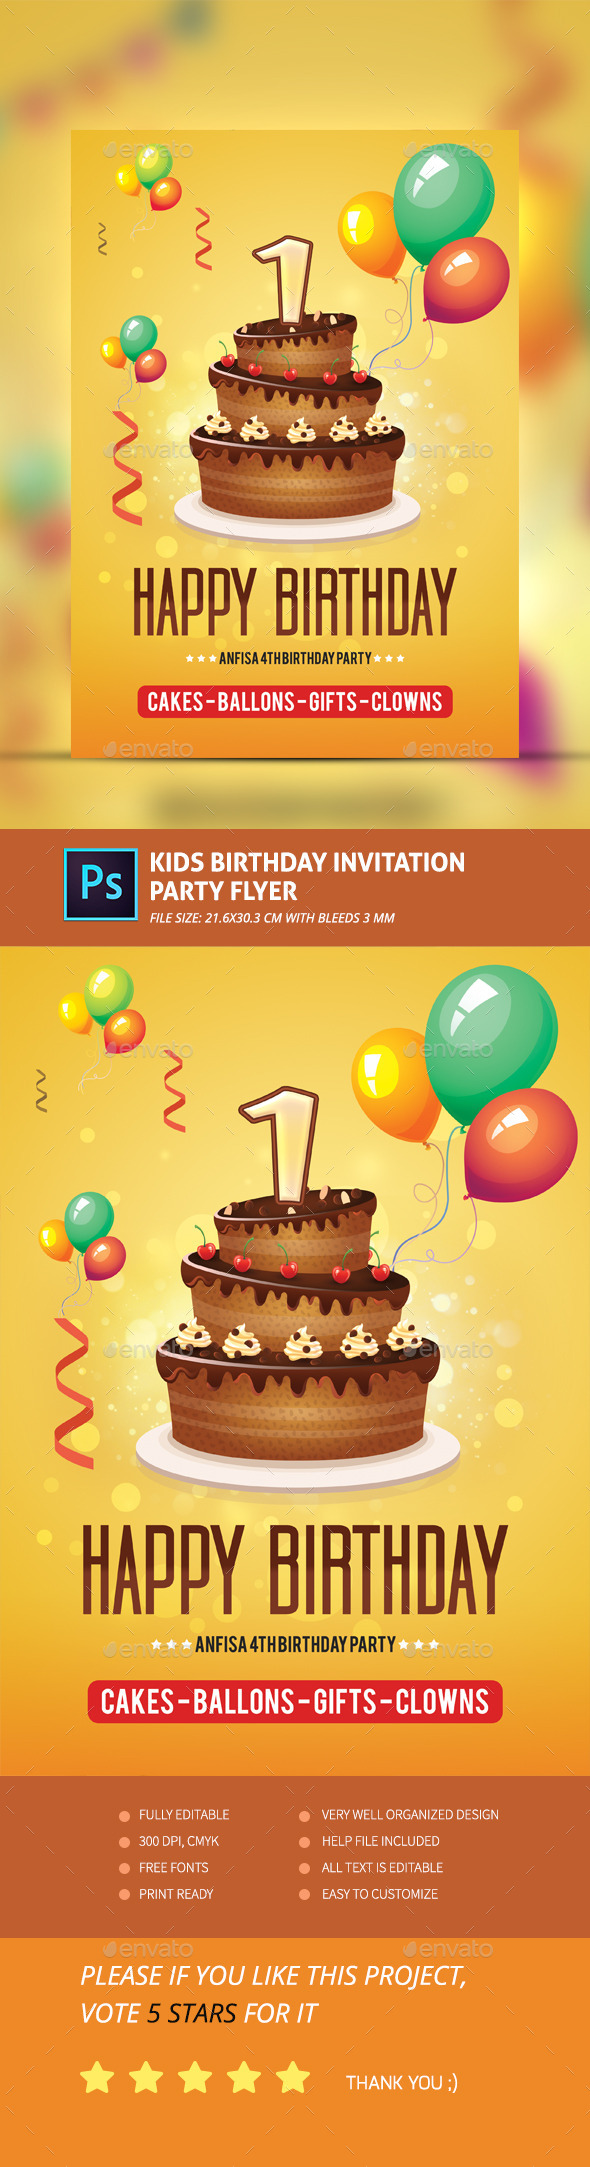 Kids Birthday Invitation Party Flyer